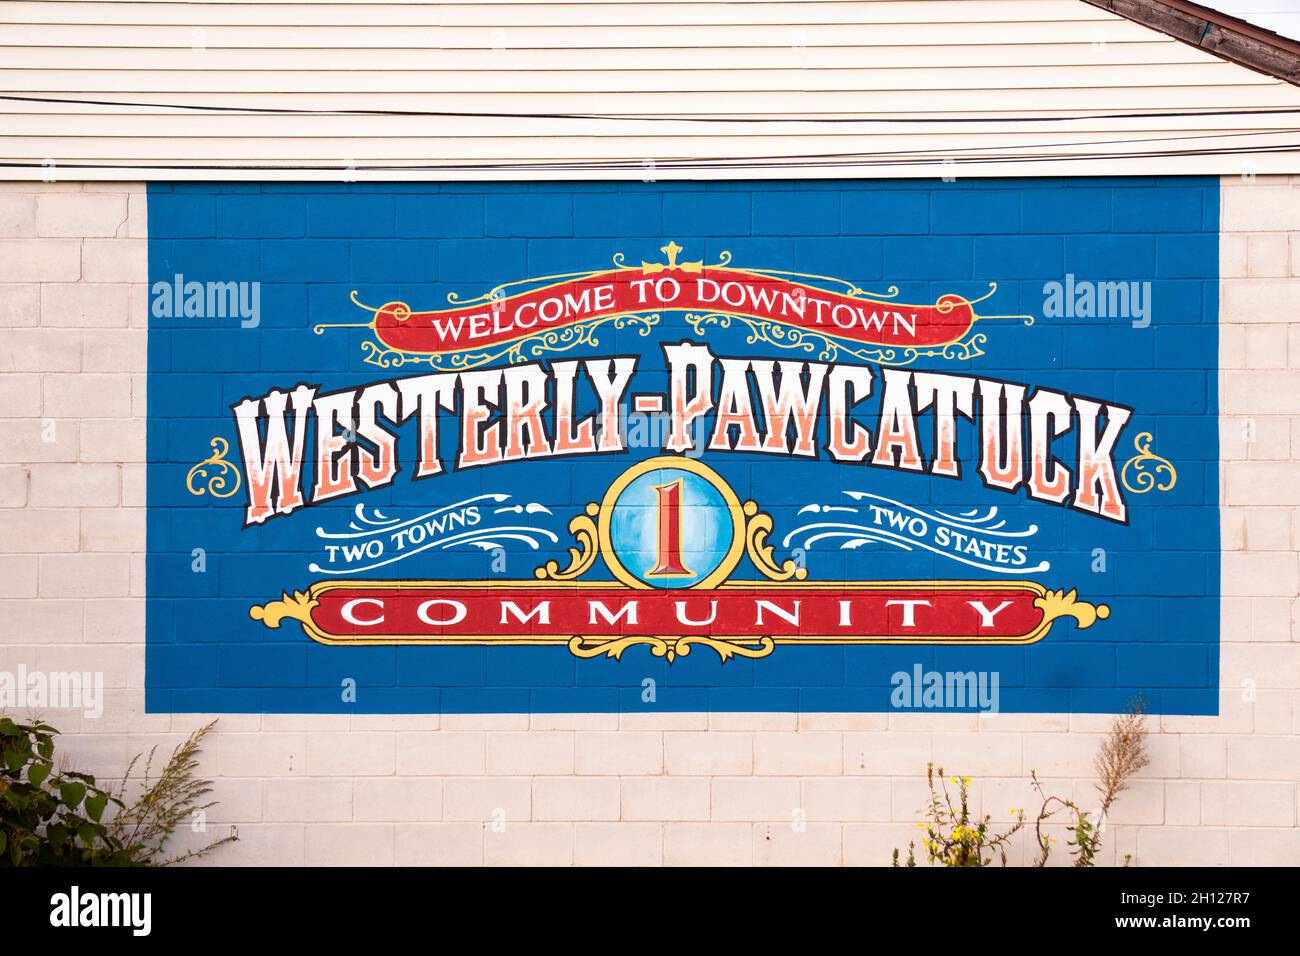 Ein Schild in der Innenstadt von Westerly Pawcatuck, einem Einkaufsviertel an der Kreuzung von 2 Städten aus 2 verschiedenen Bundesstaaten. Stockfoto